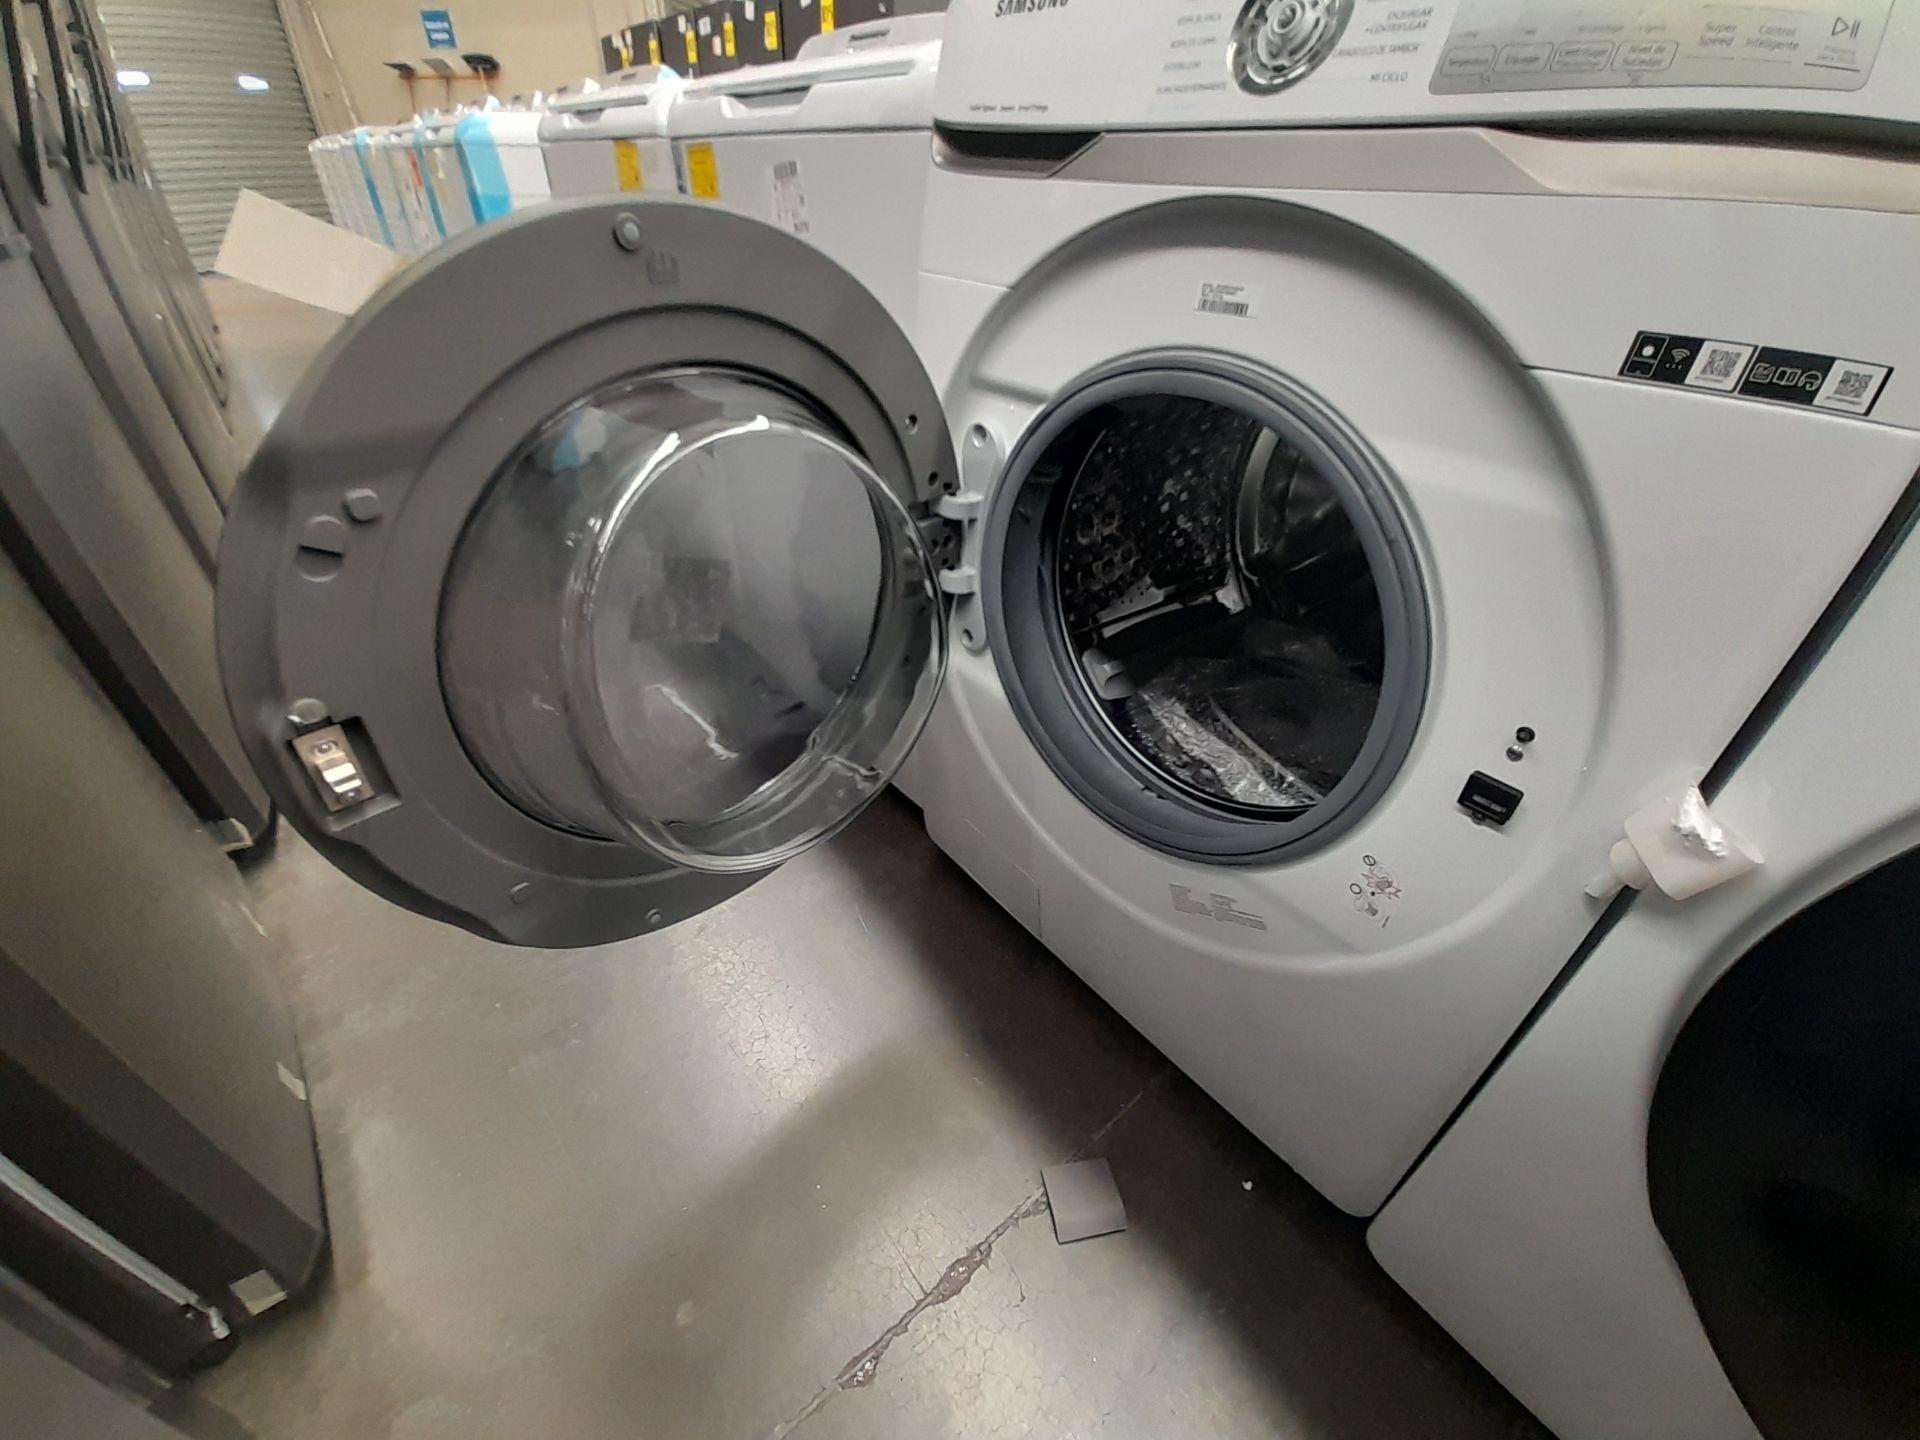 Lote de 1 lavadora y 1 Secadora contiene: 1 lavadora de 22 KG, Marca SAMSUNG, Modelo WF22R6270AV, S - Image 4 of 7